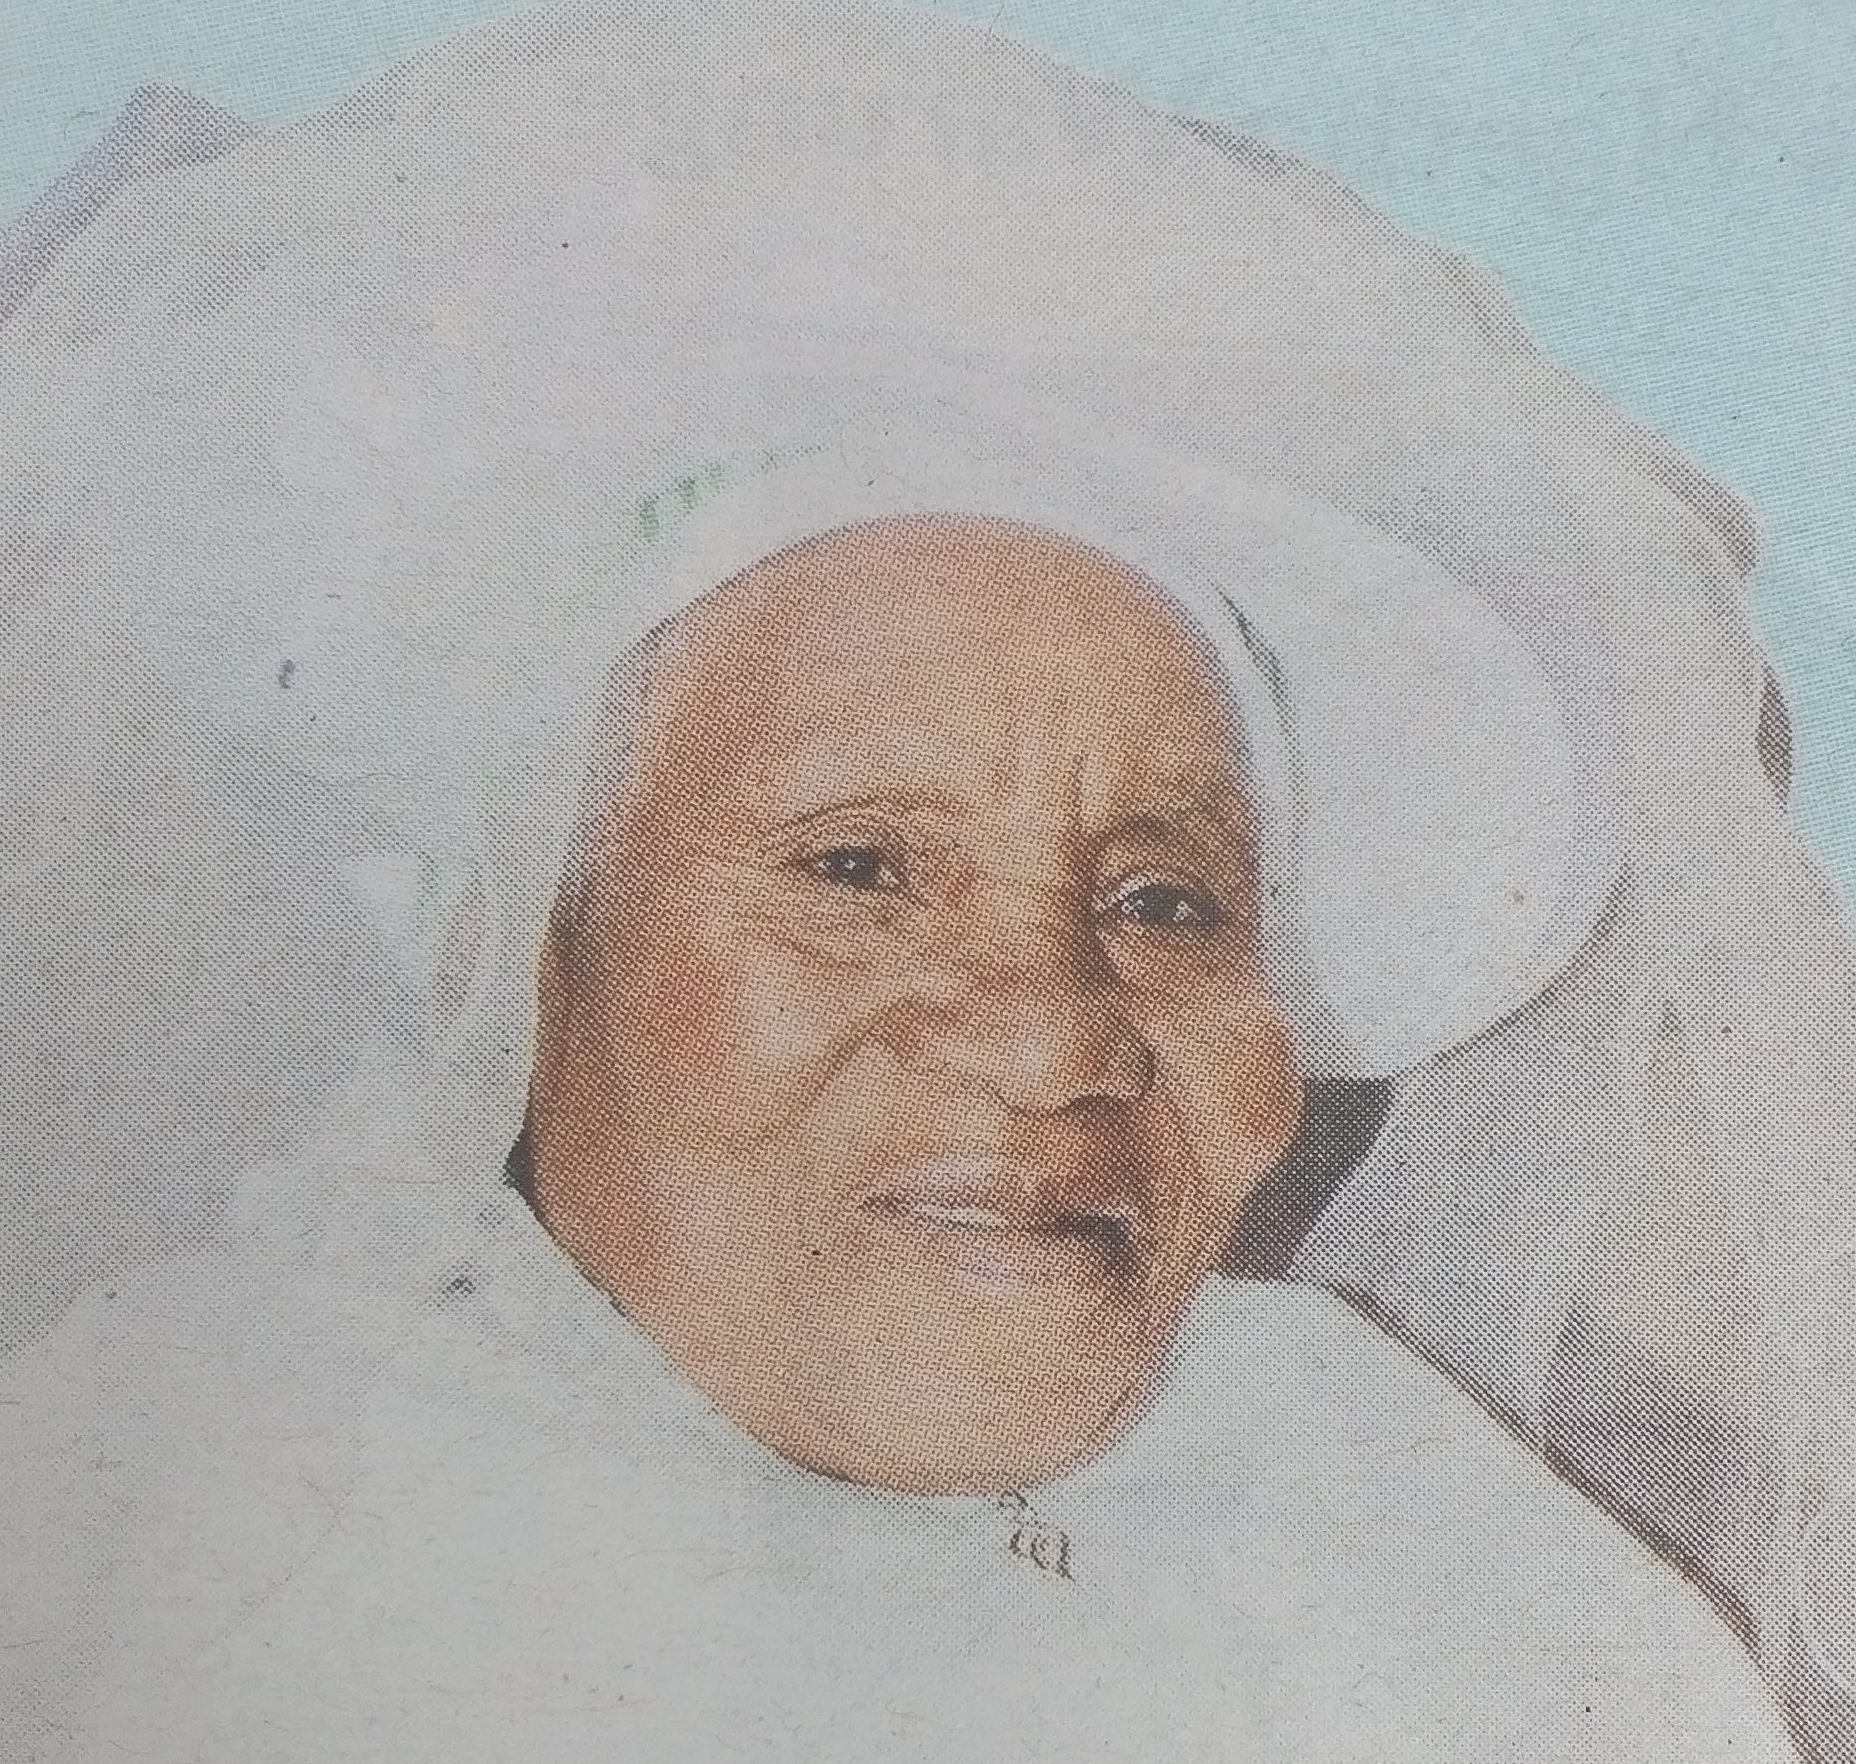 Obituary Image of Esther Wanjiru Mwaura (Wandirangu)